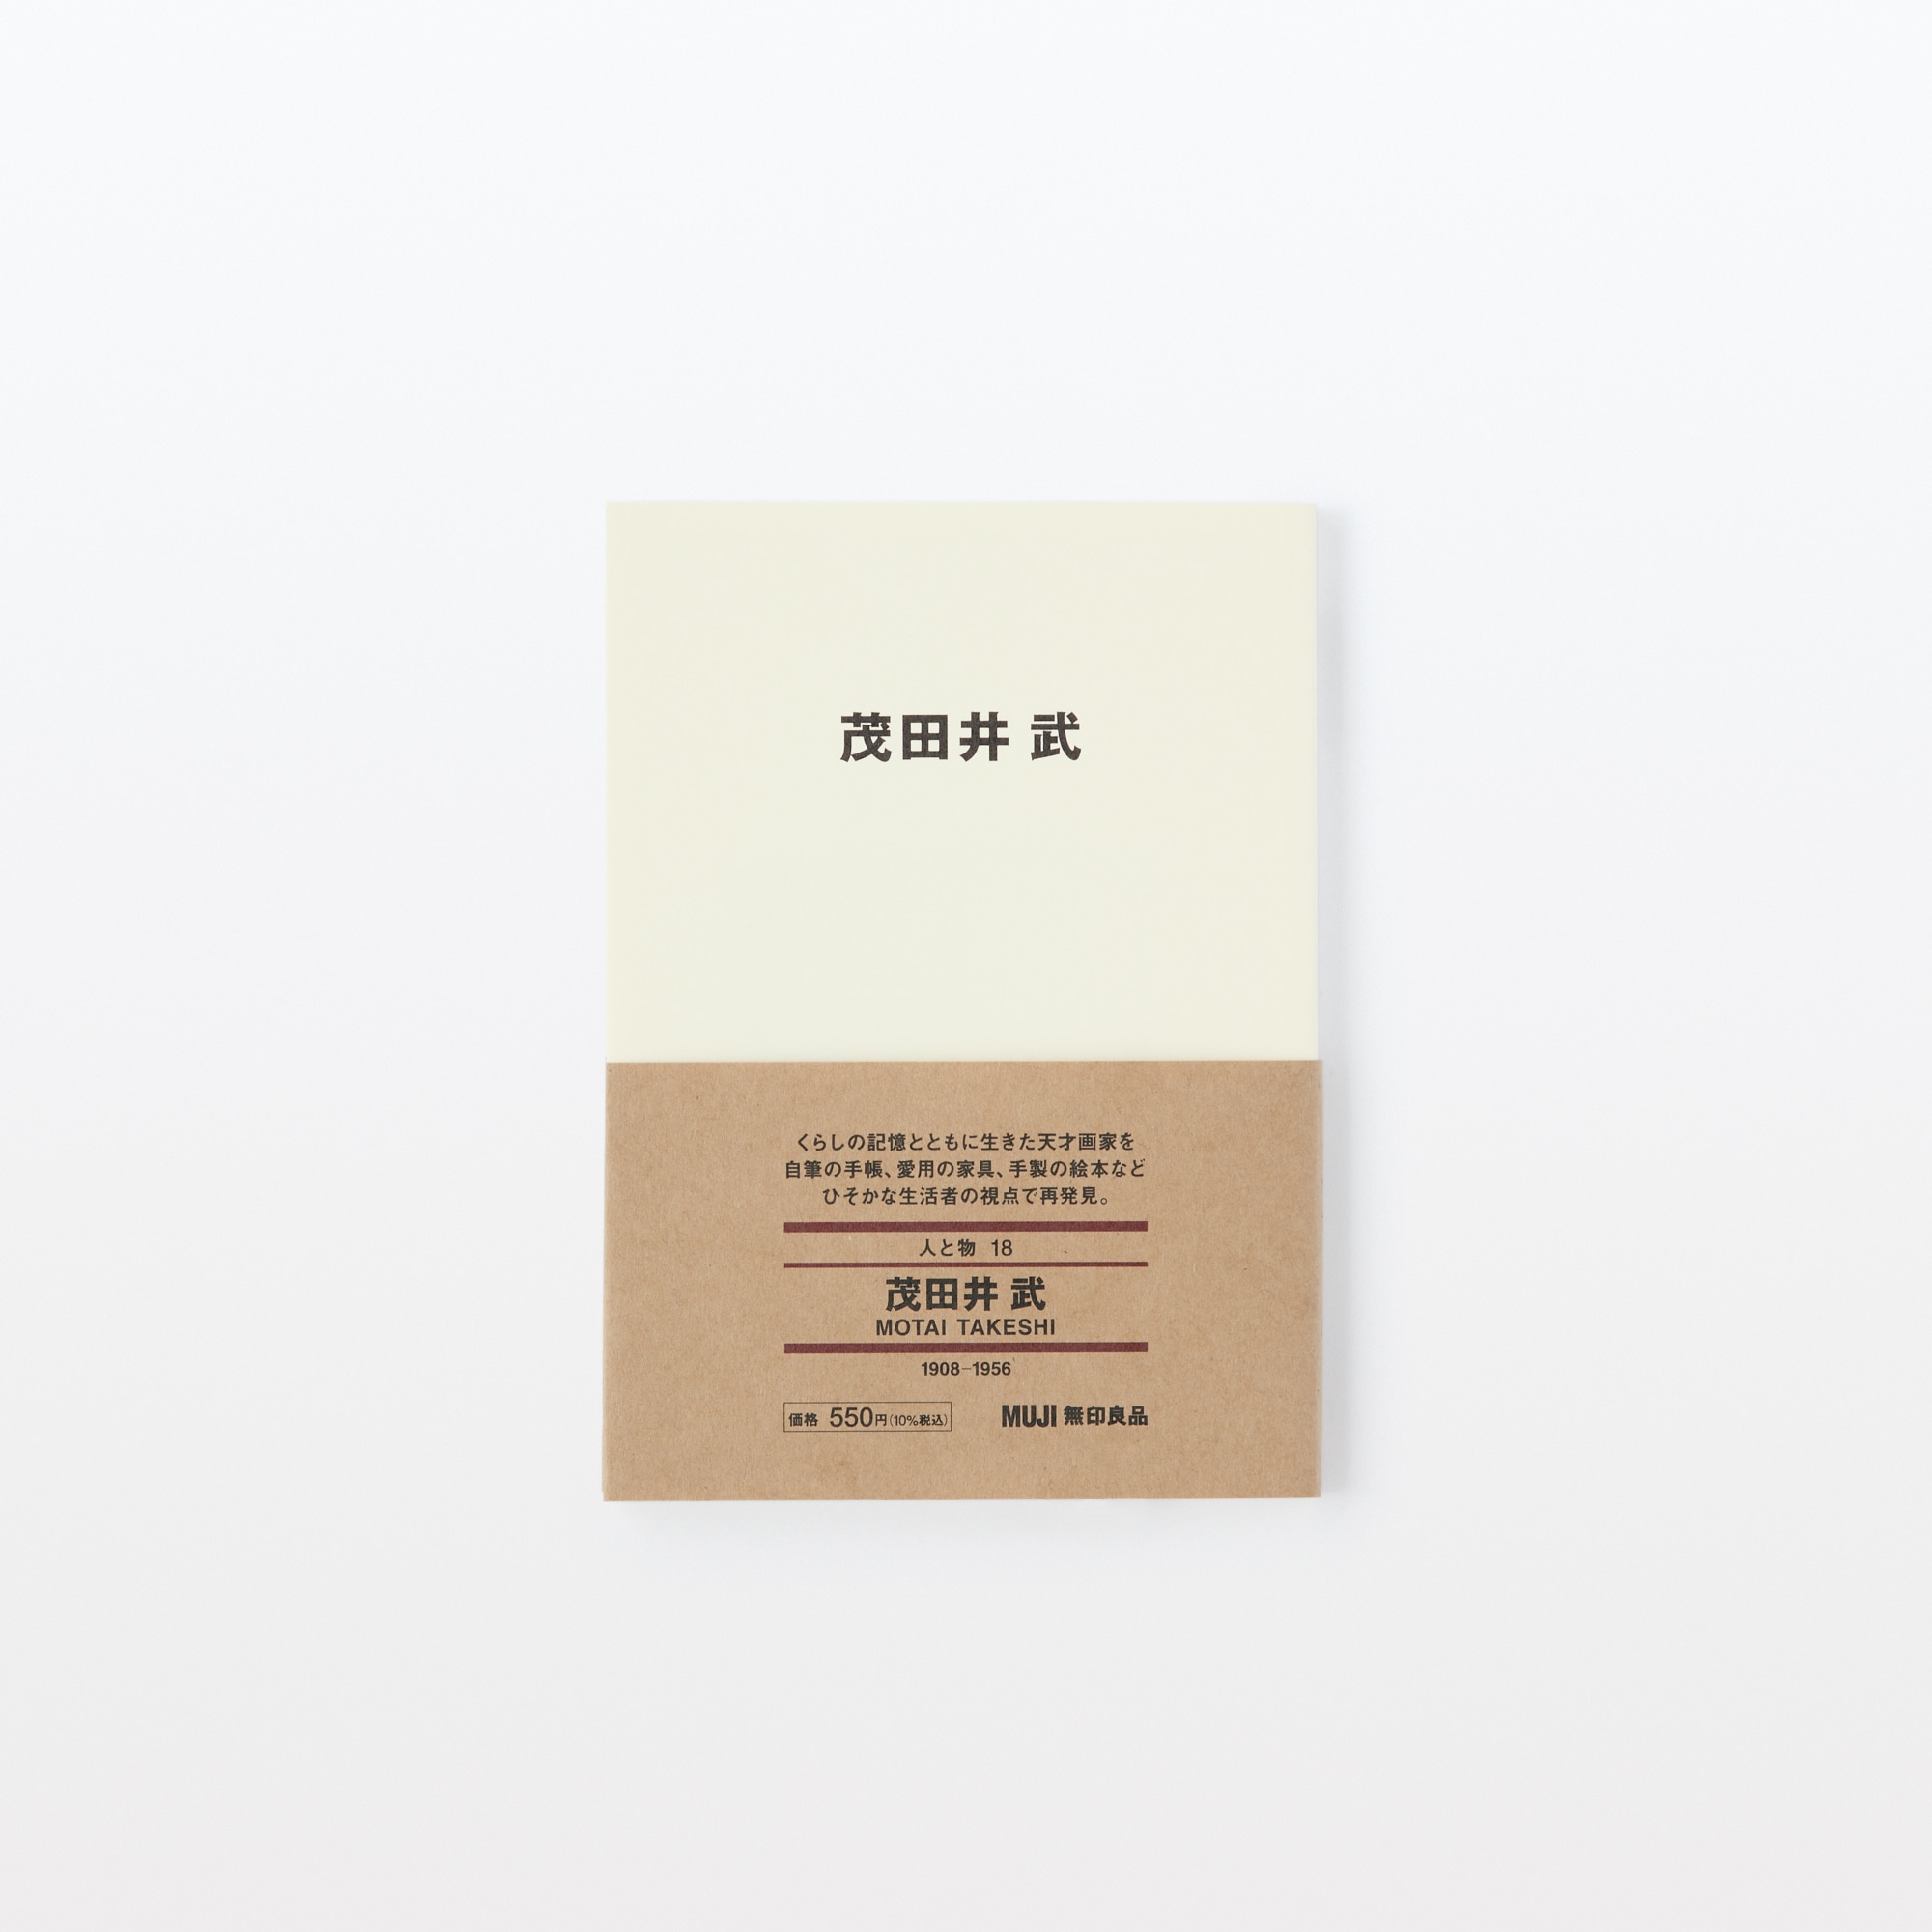 무인양품 일본 사람과 물건18 시게타 이케타